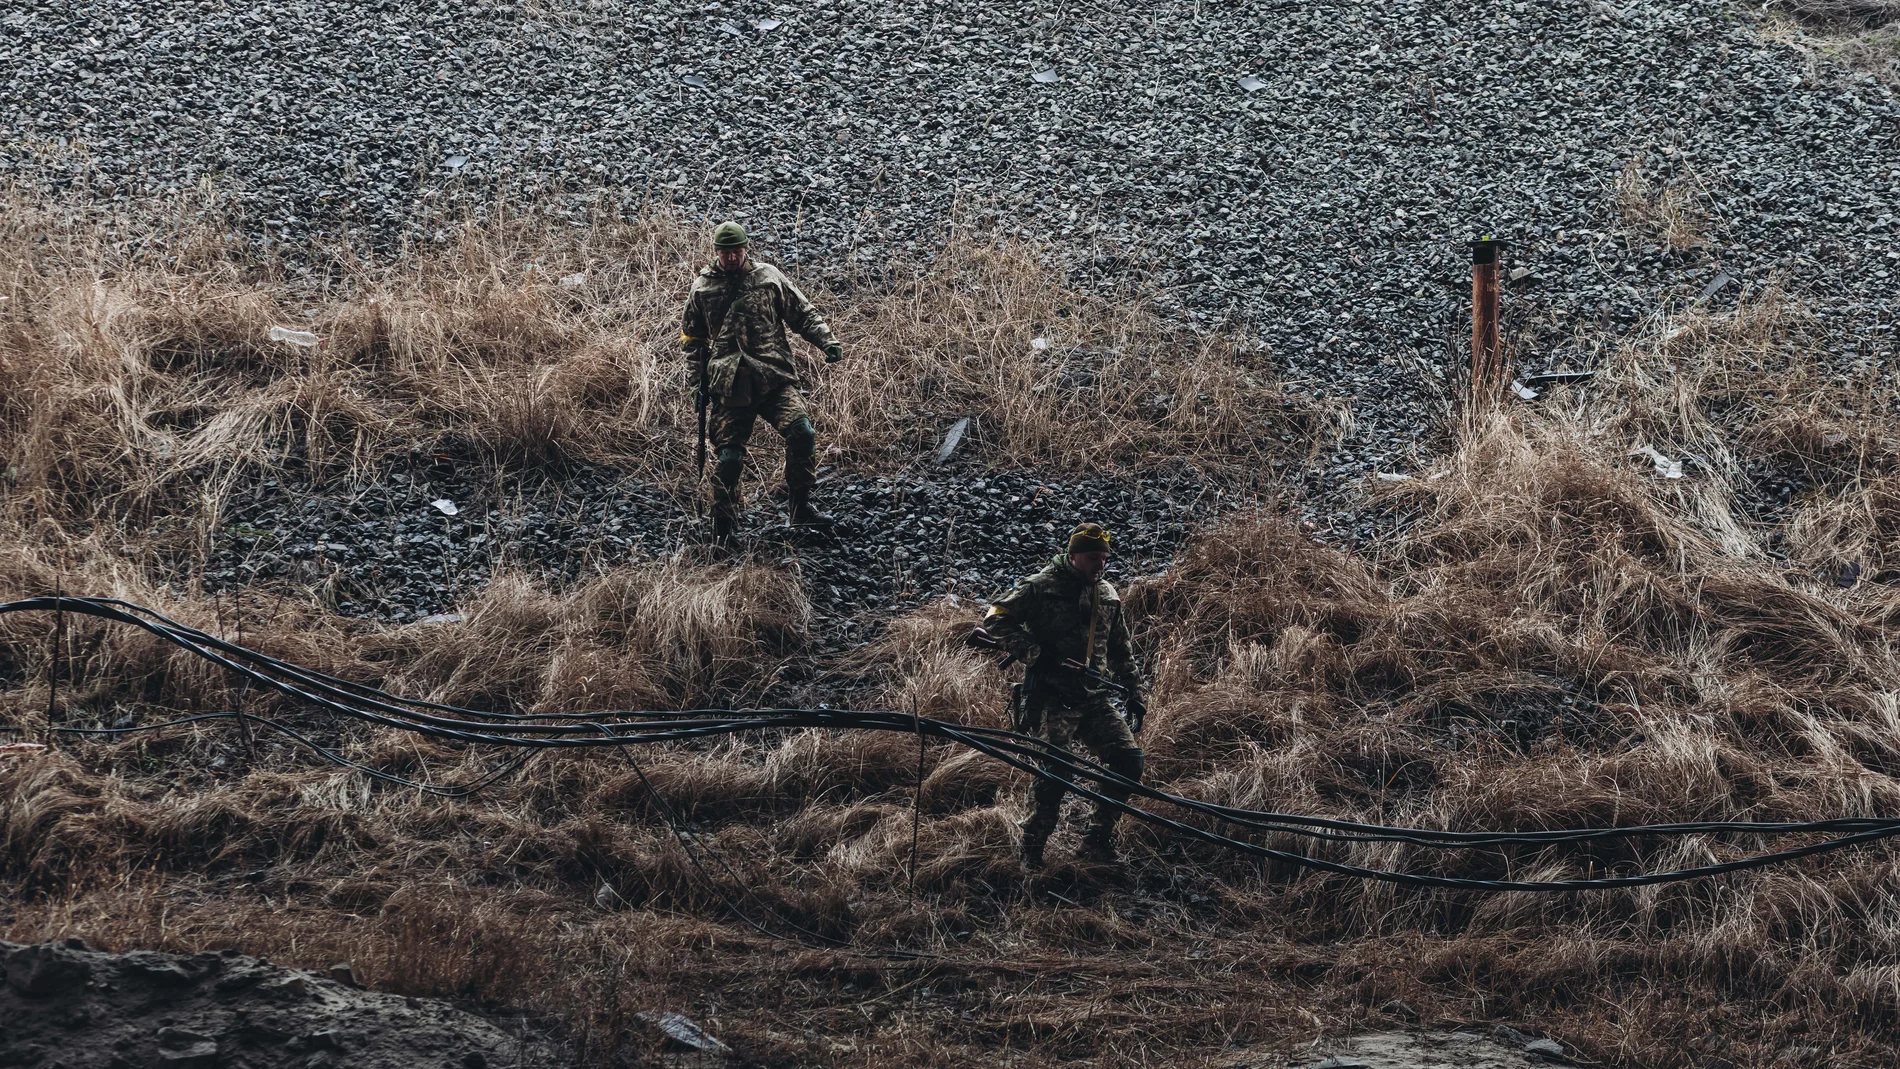 Dos soldados caminan por una ladera,, en Kiev (Ucrania). Mañana, pueden convertirse en guerrilleros Diego Herrera / Europa Press 02/03/2022